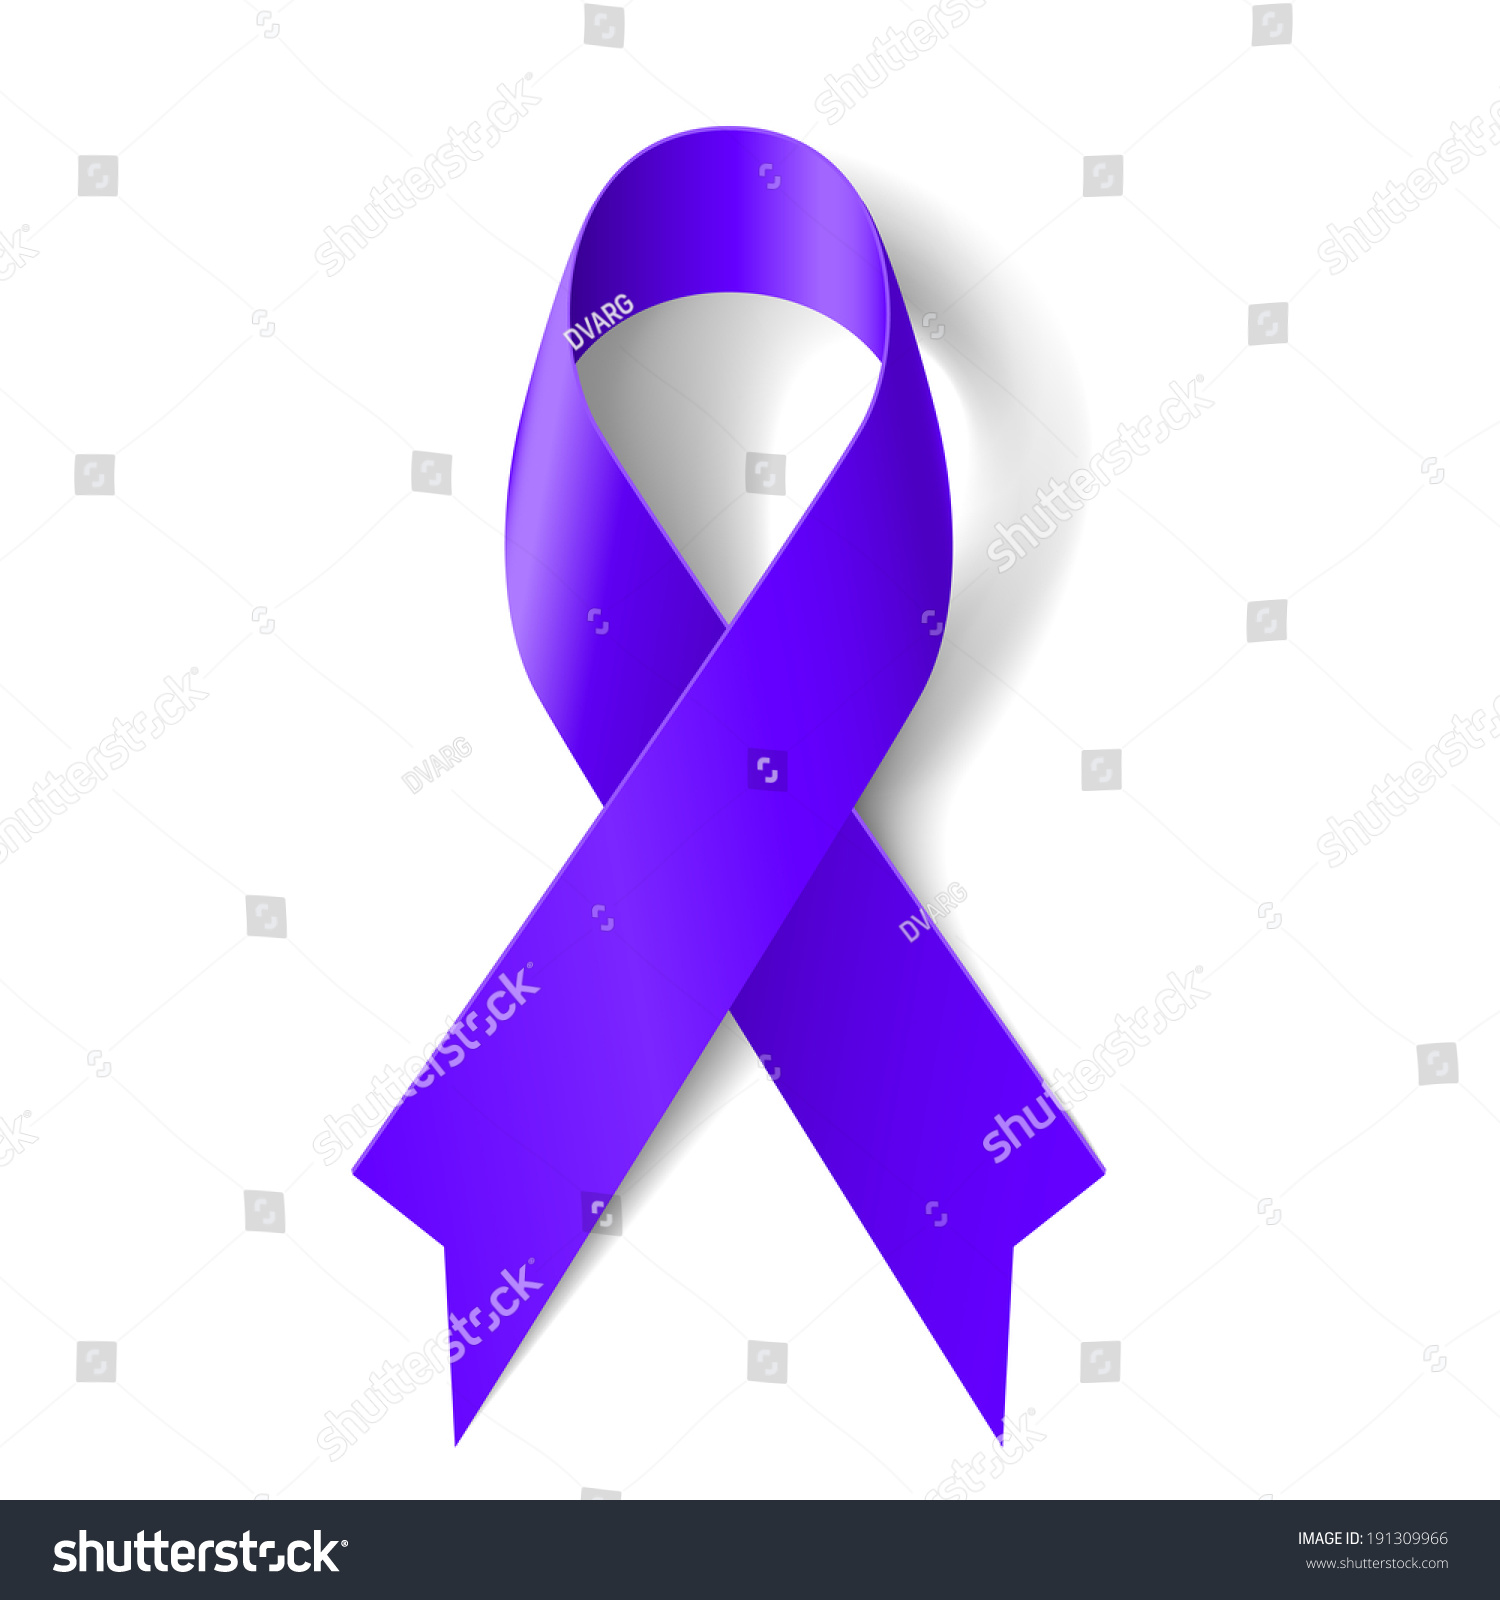 紫色的丝带象征一般癌症意识,服药过量,家庭暴